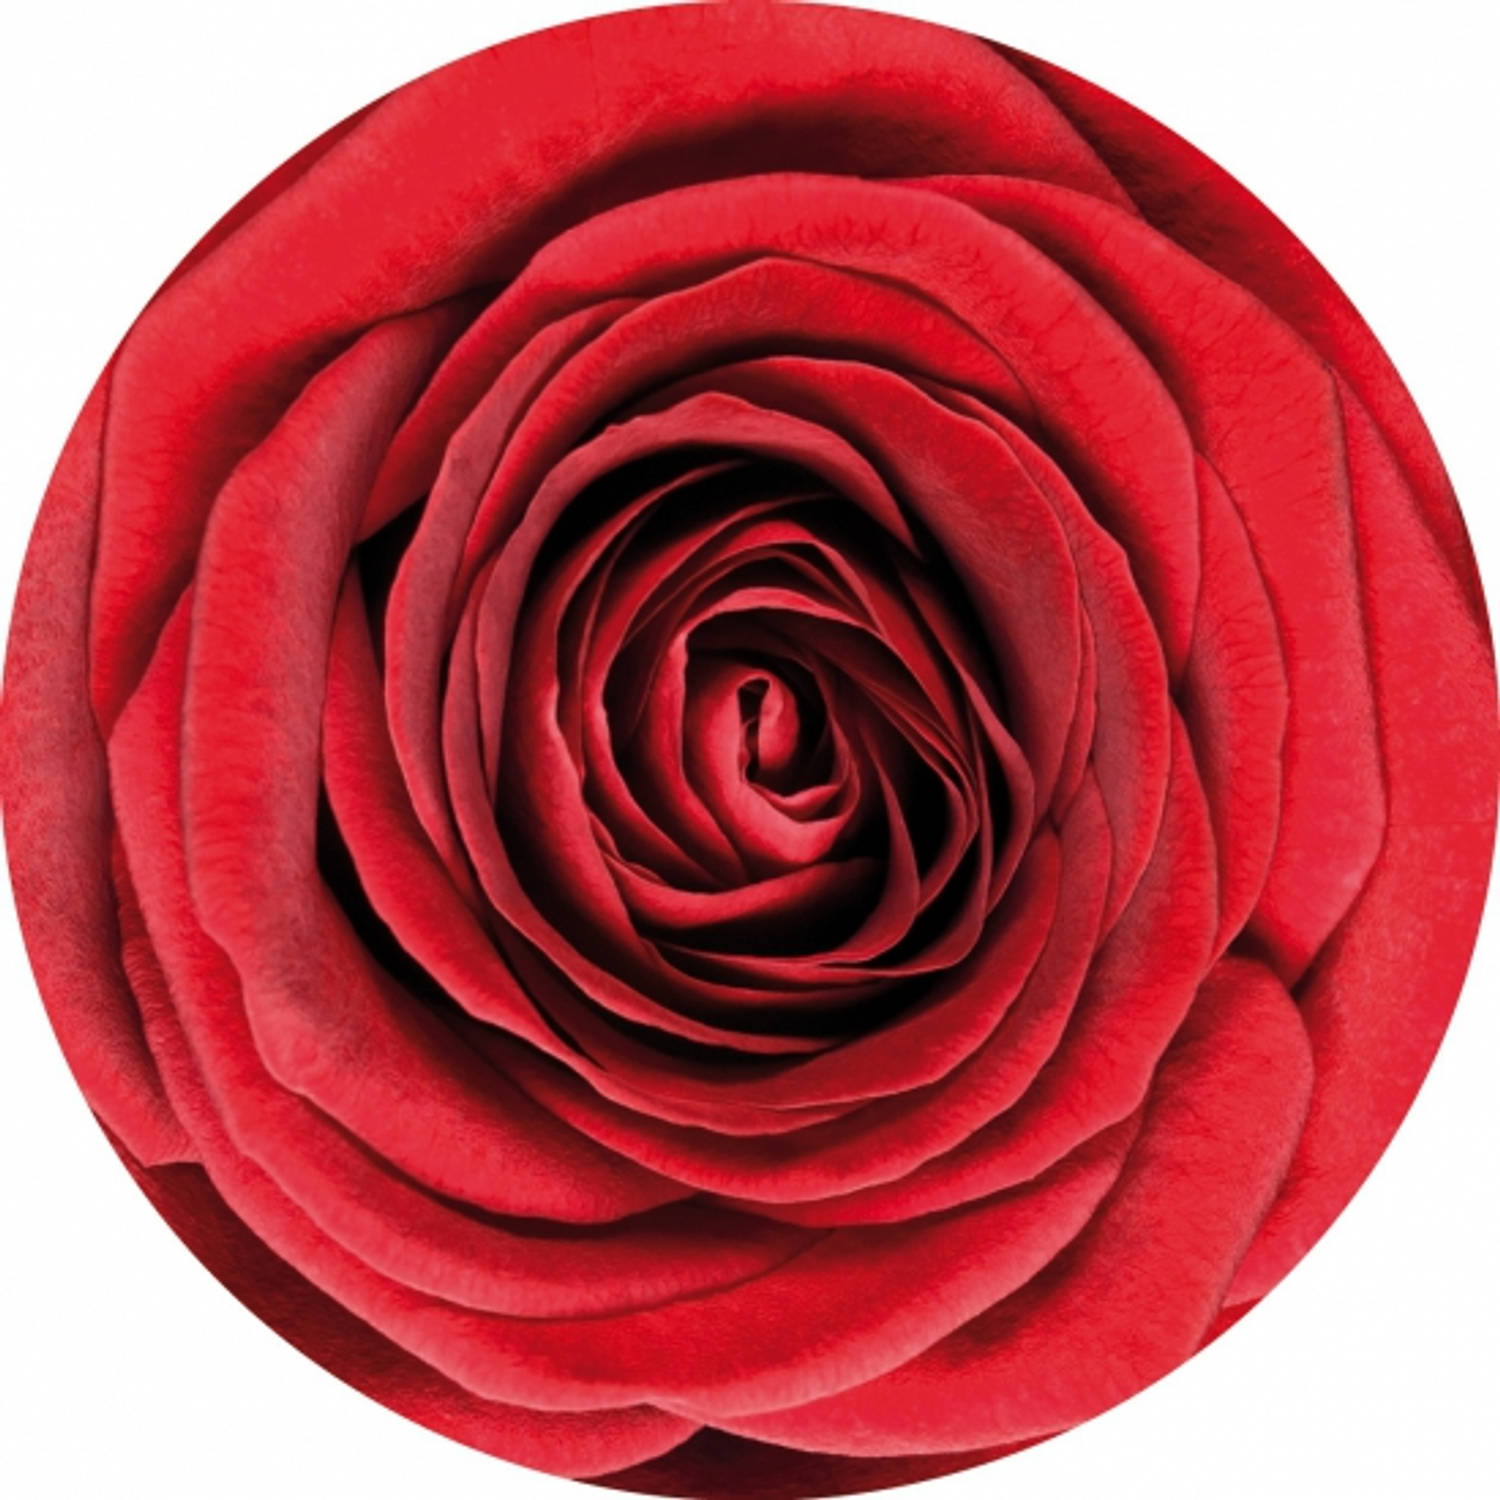 30x Onderzetters met rode roos bloemen - Bierfiltjes